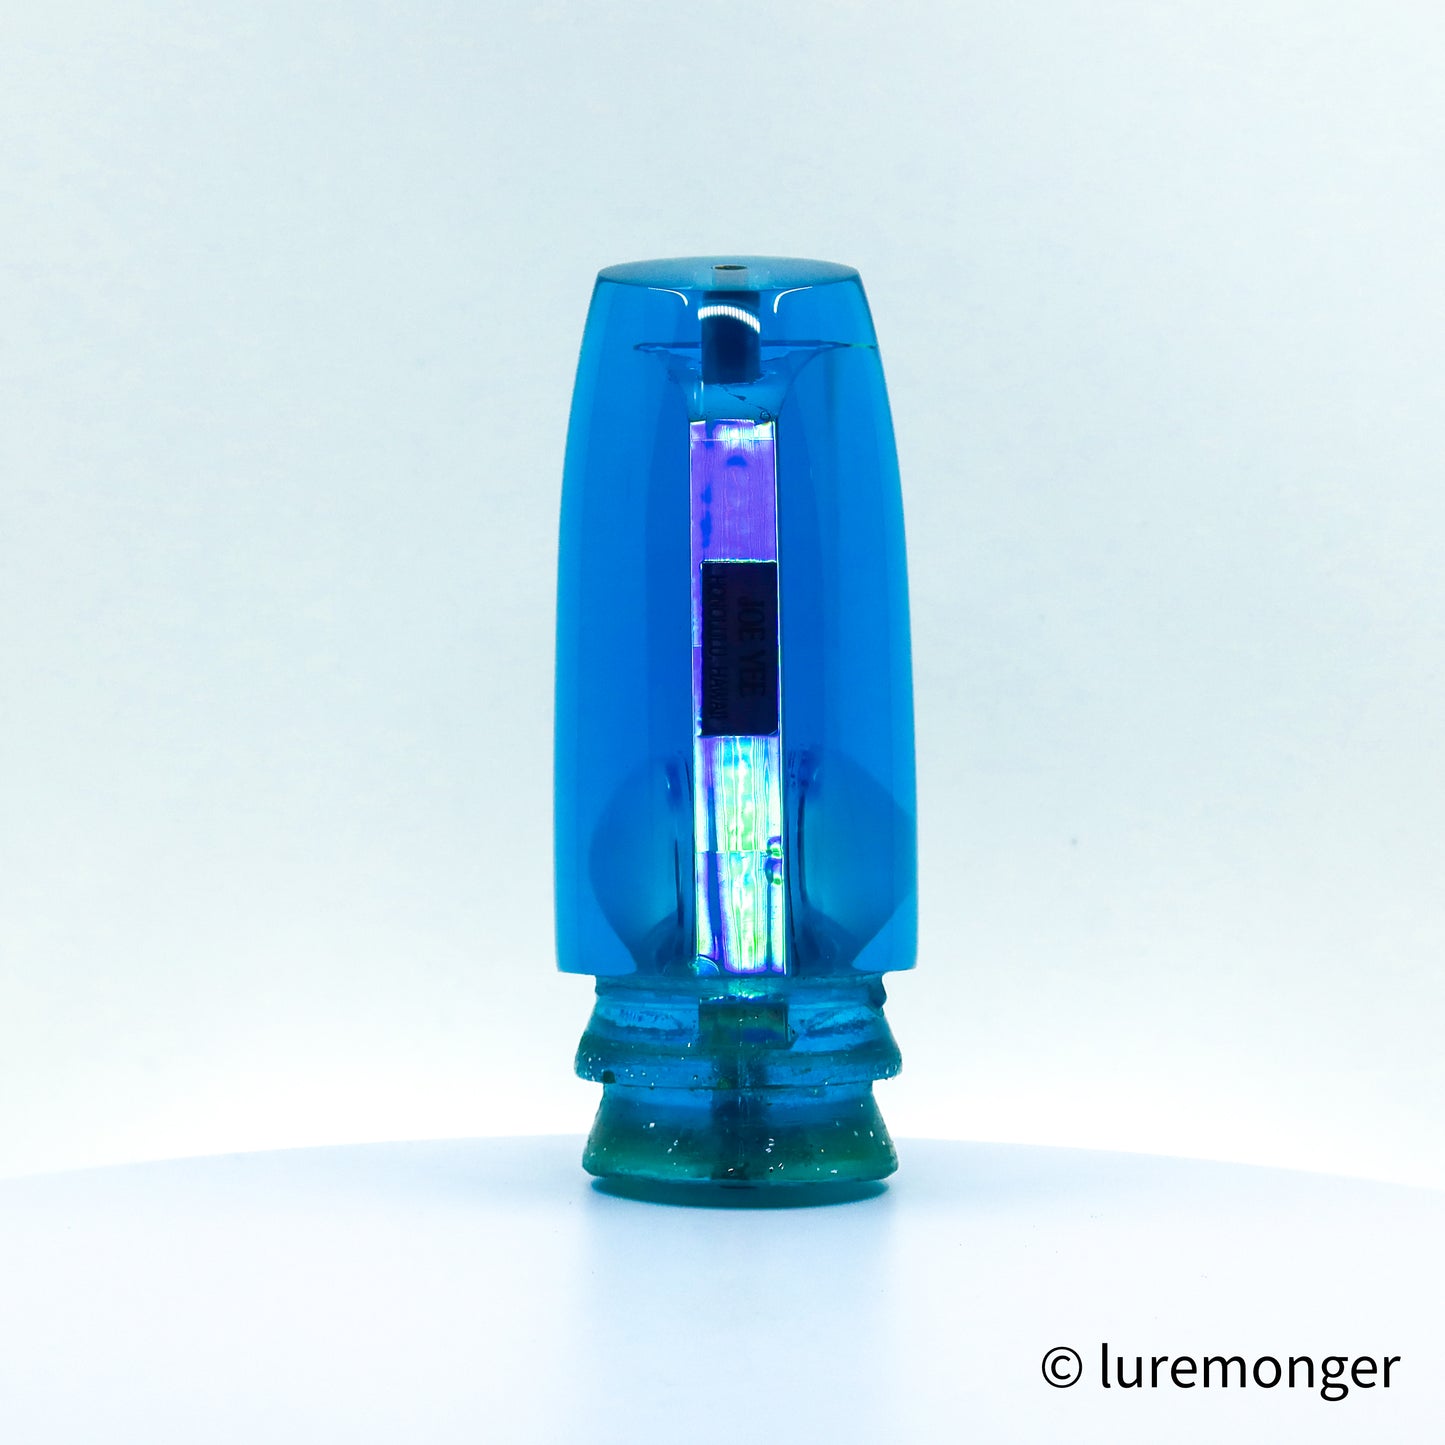 Joe Yee - 14” Blue Tint Super Plunger